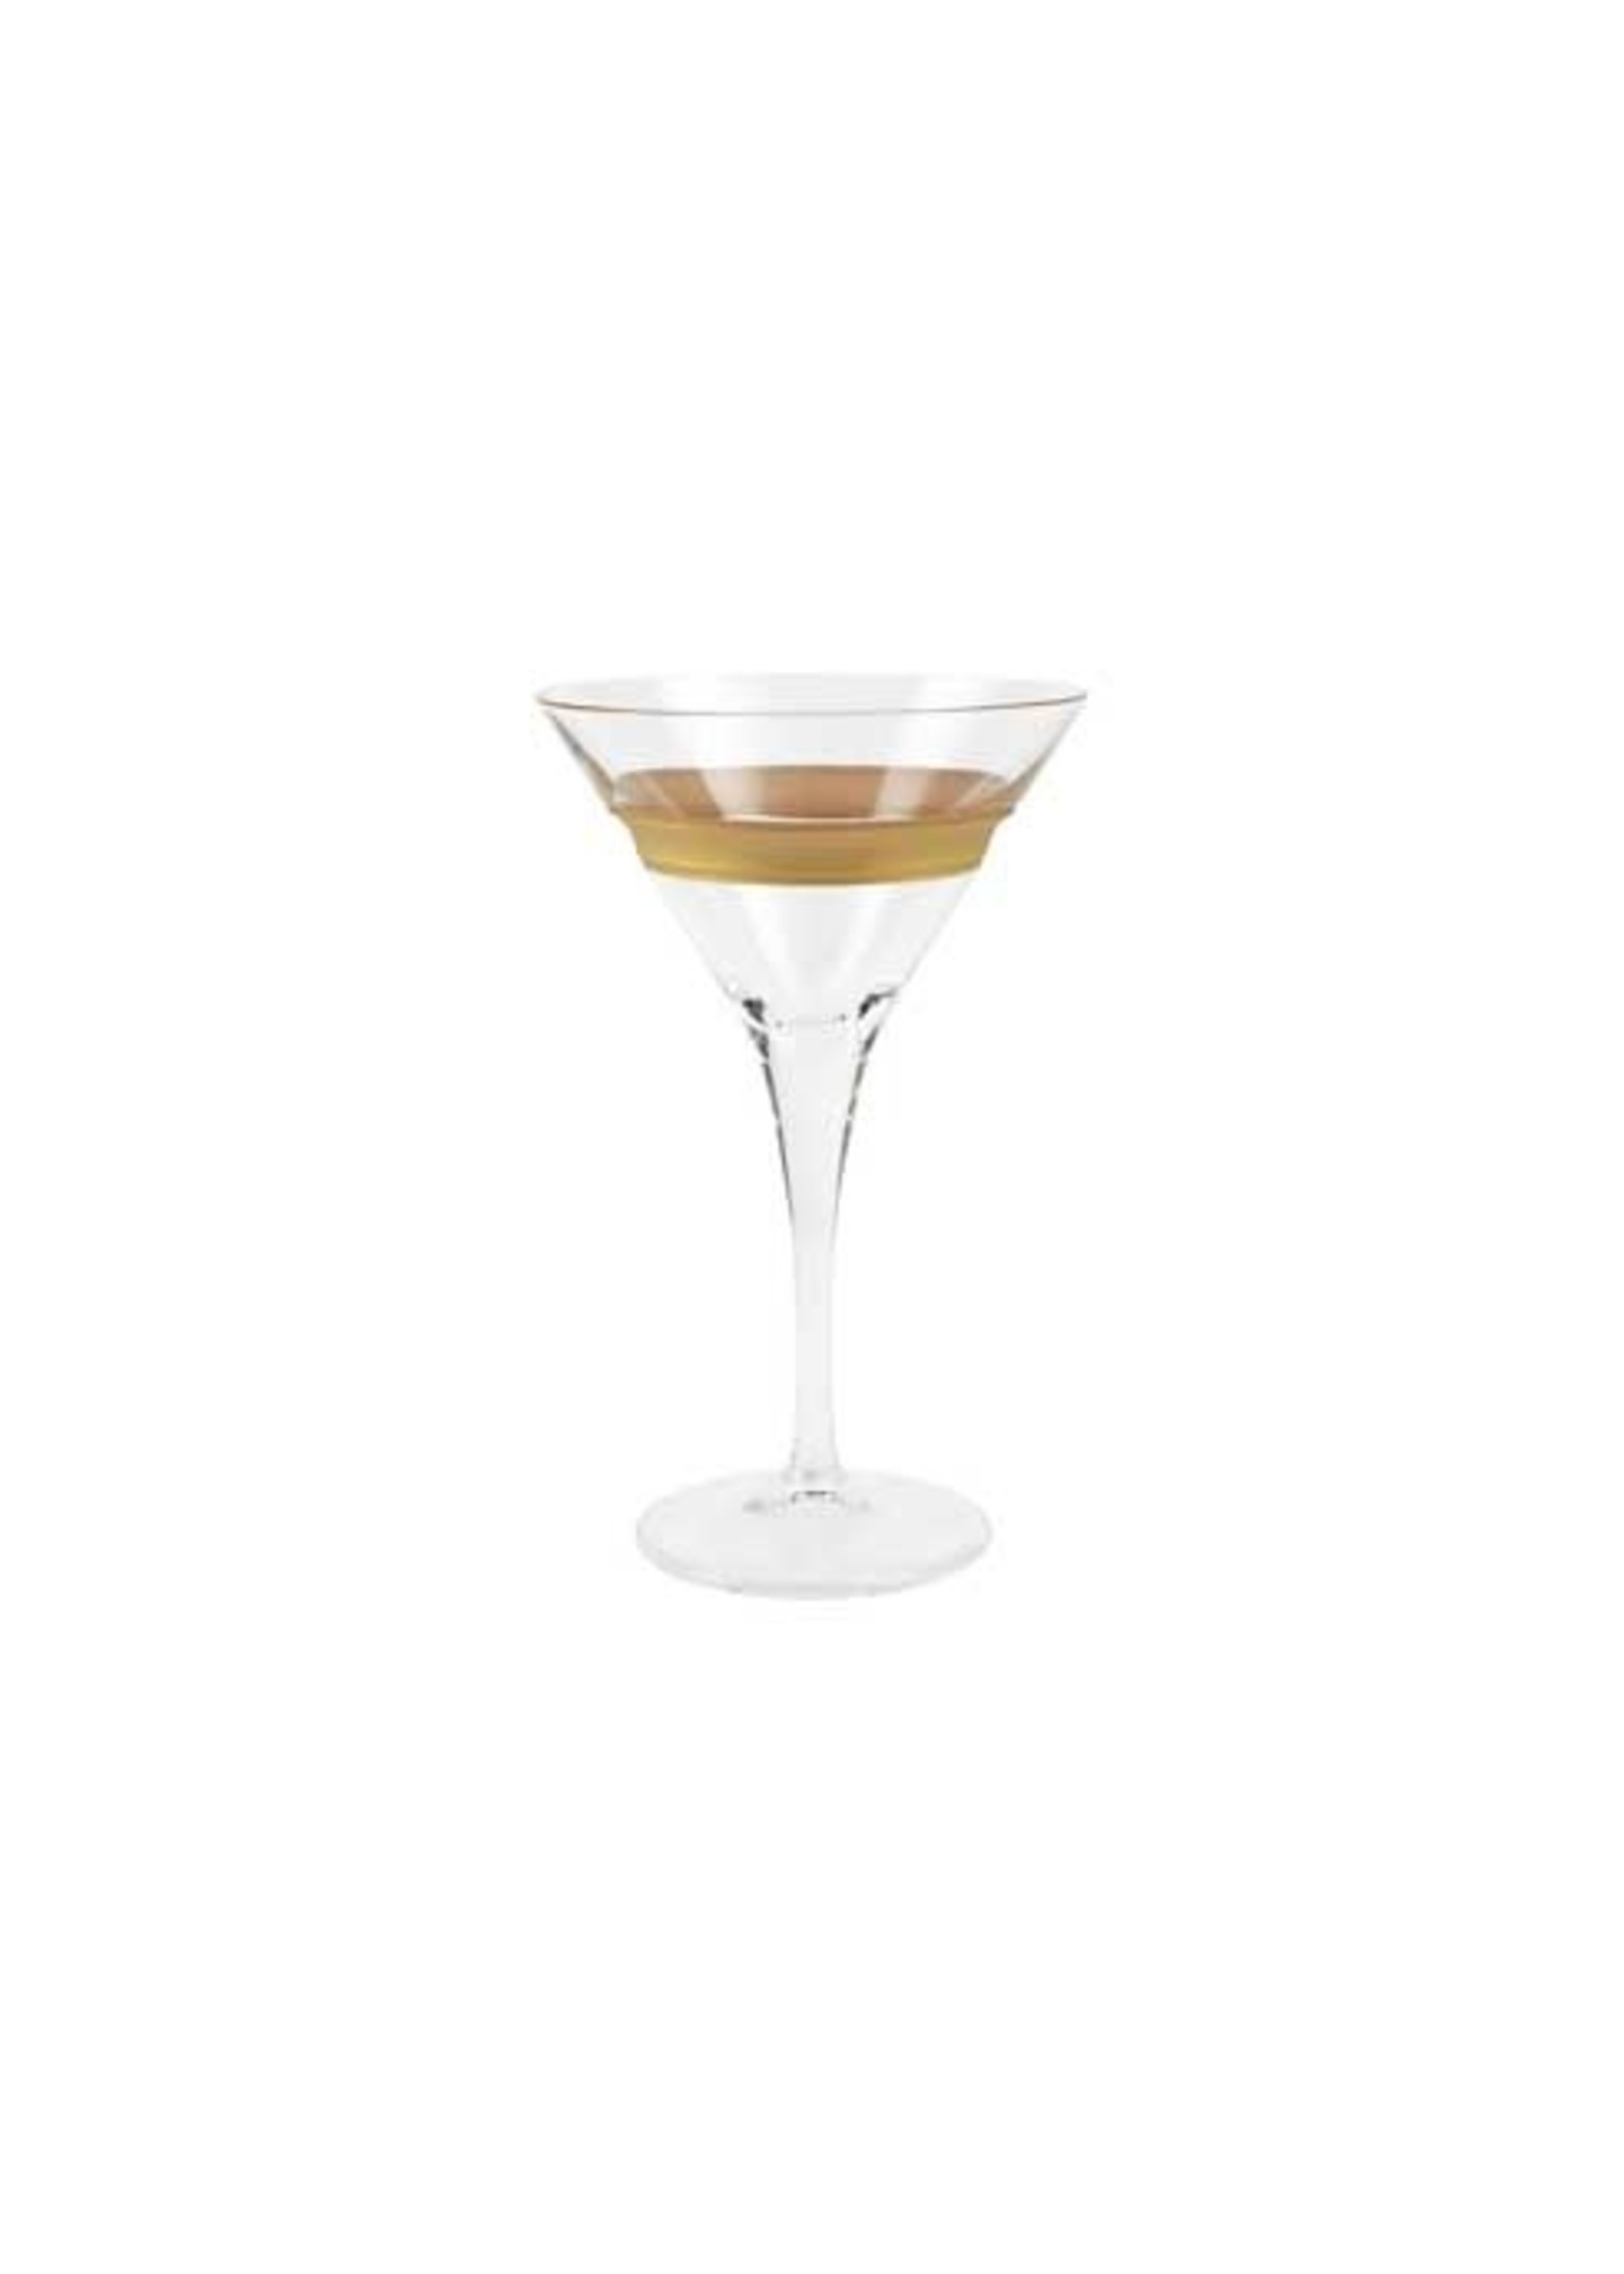 VIETRI Raffaello Banded Martini Glass